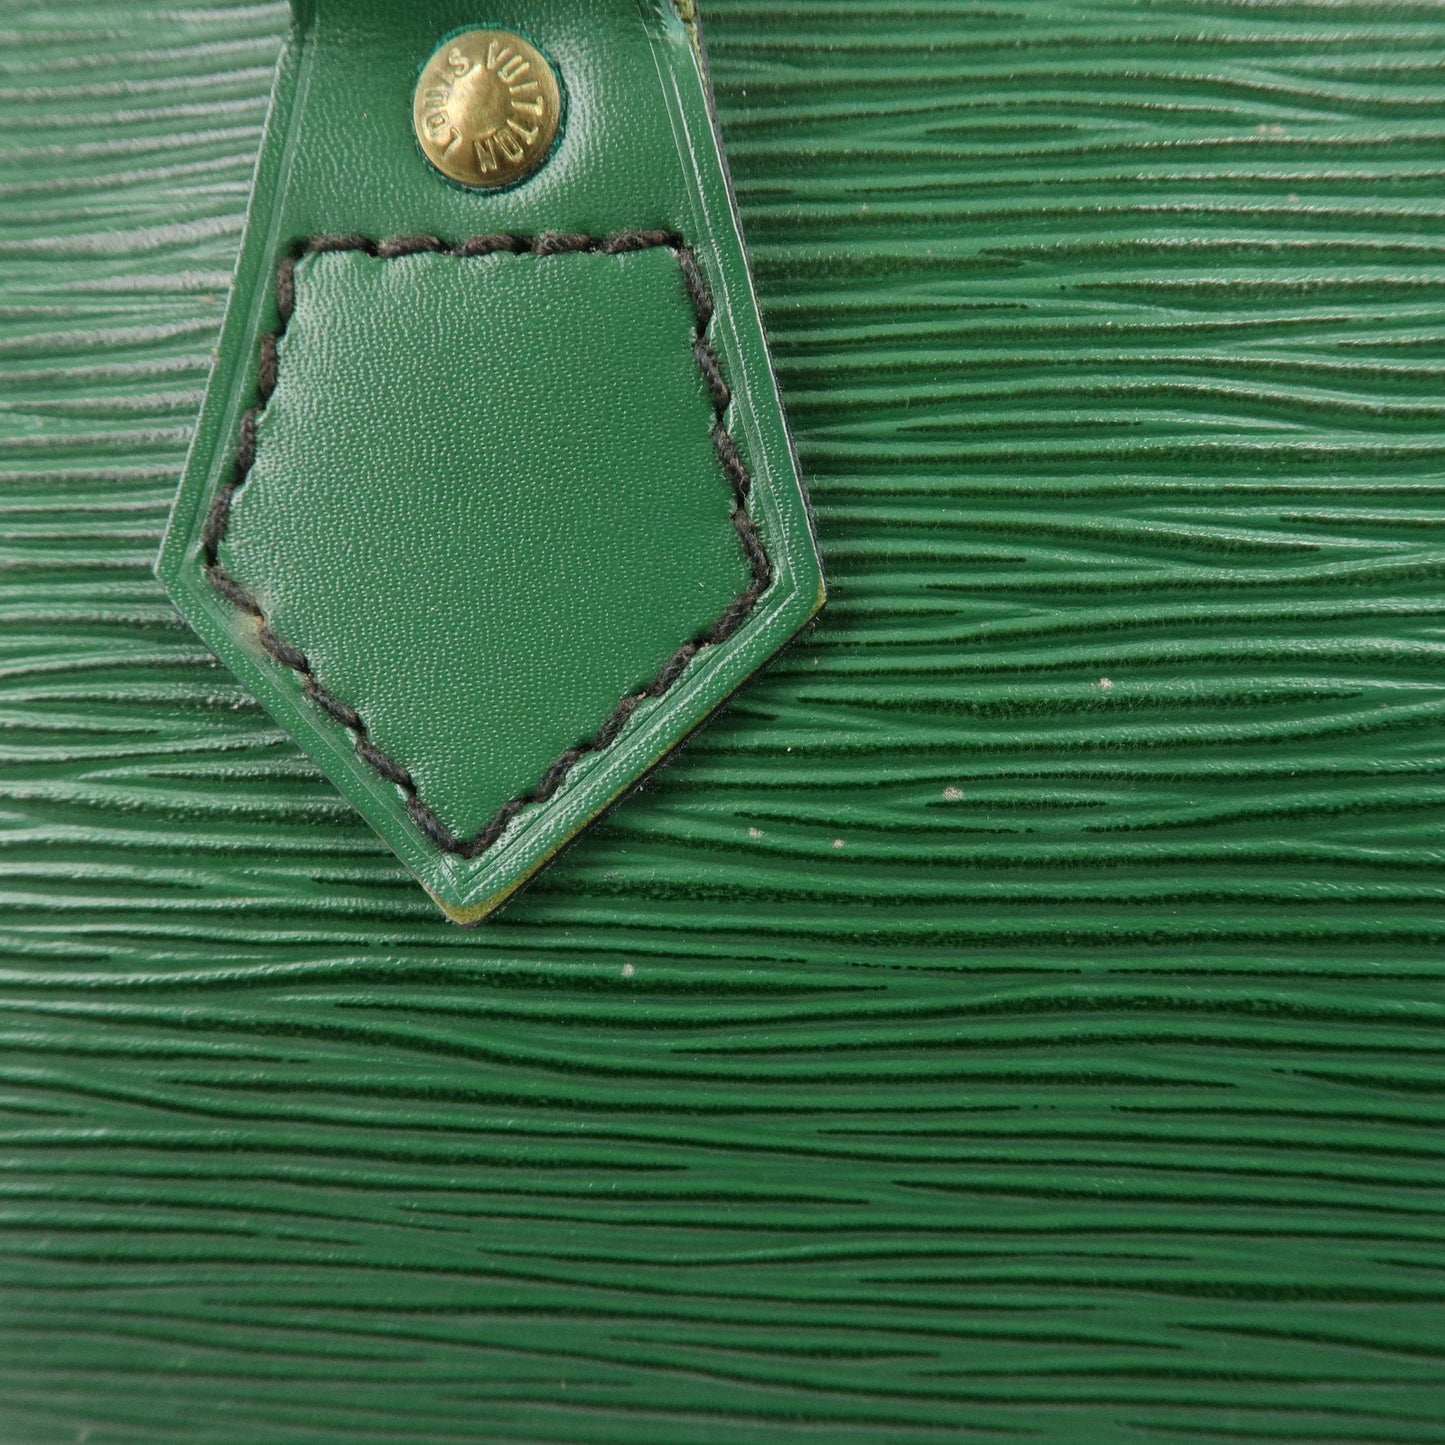 Louis Vuitton Epi Speedy 25 Hand Boston Bag Borneo Green M43014